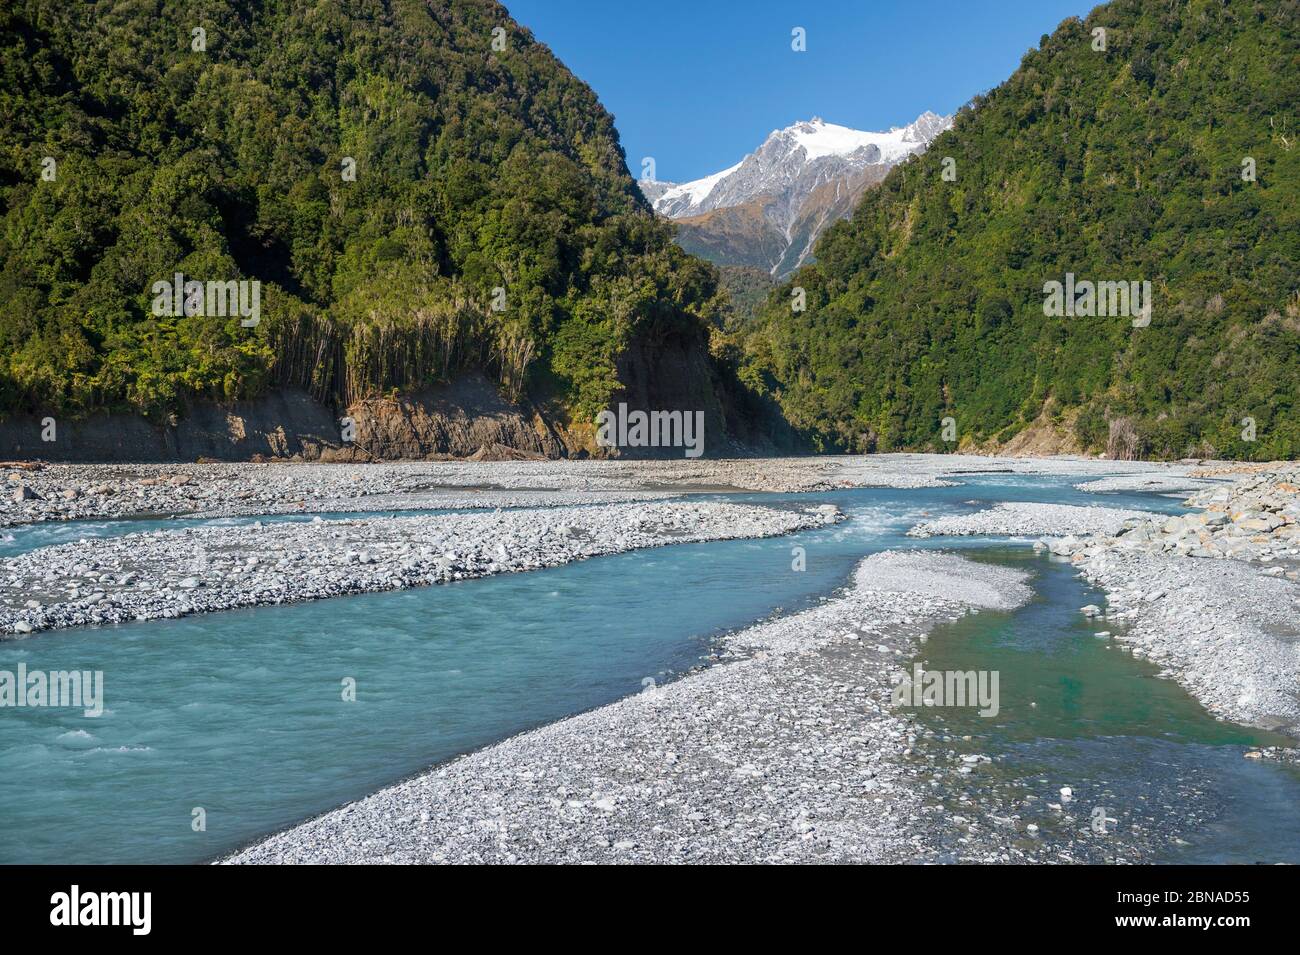 Ghiaia letto nella valle del fiume Karangarua, pendii boschivi e vette glaciate delle Alpi meridionali della Nuova Zelanda, Westland National Park, Fox GLAC Foto Stock